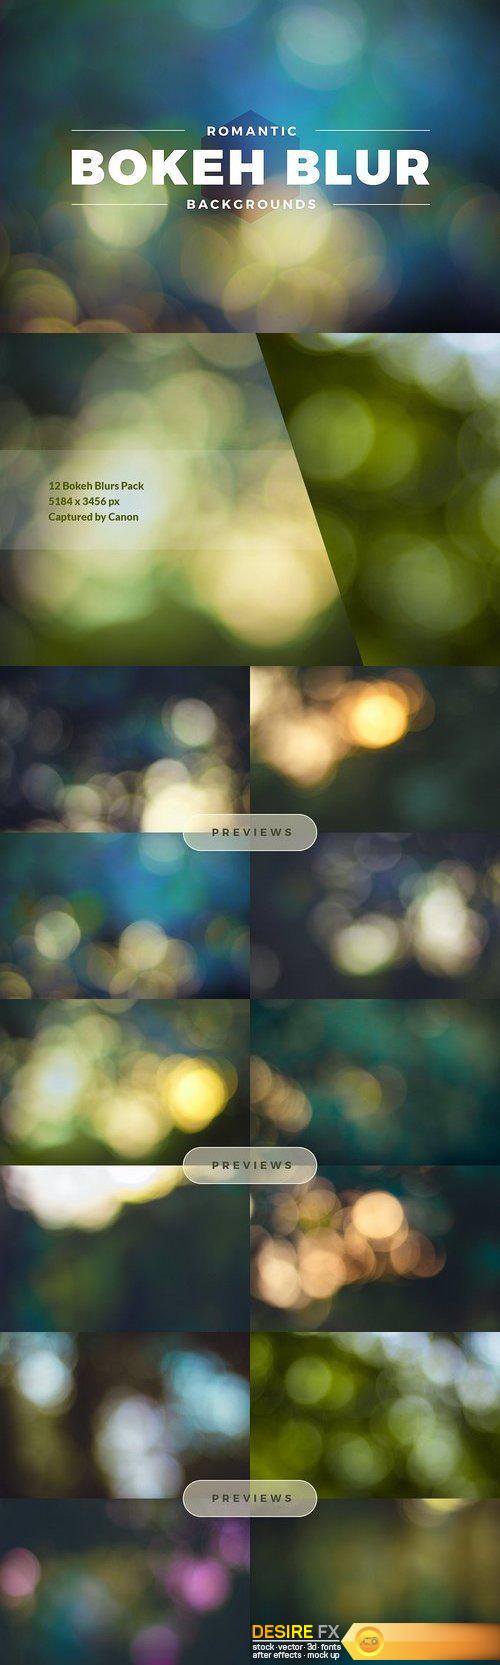 CM - Romantic Bokeh Blur Backgrounds Pack 1419945